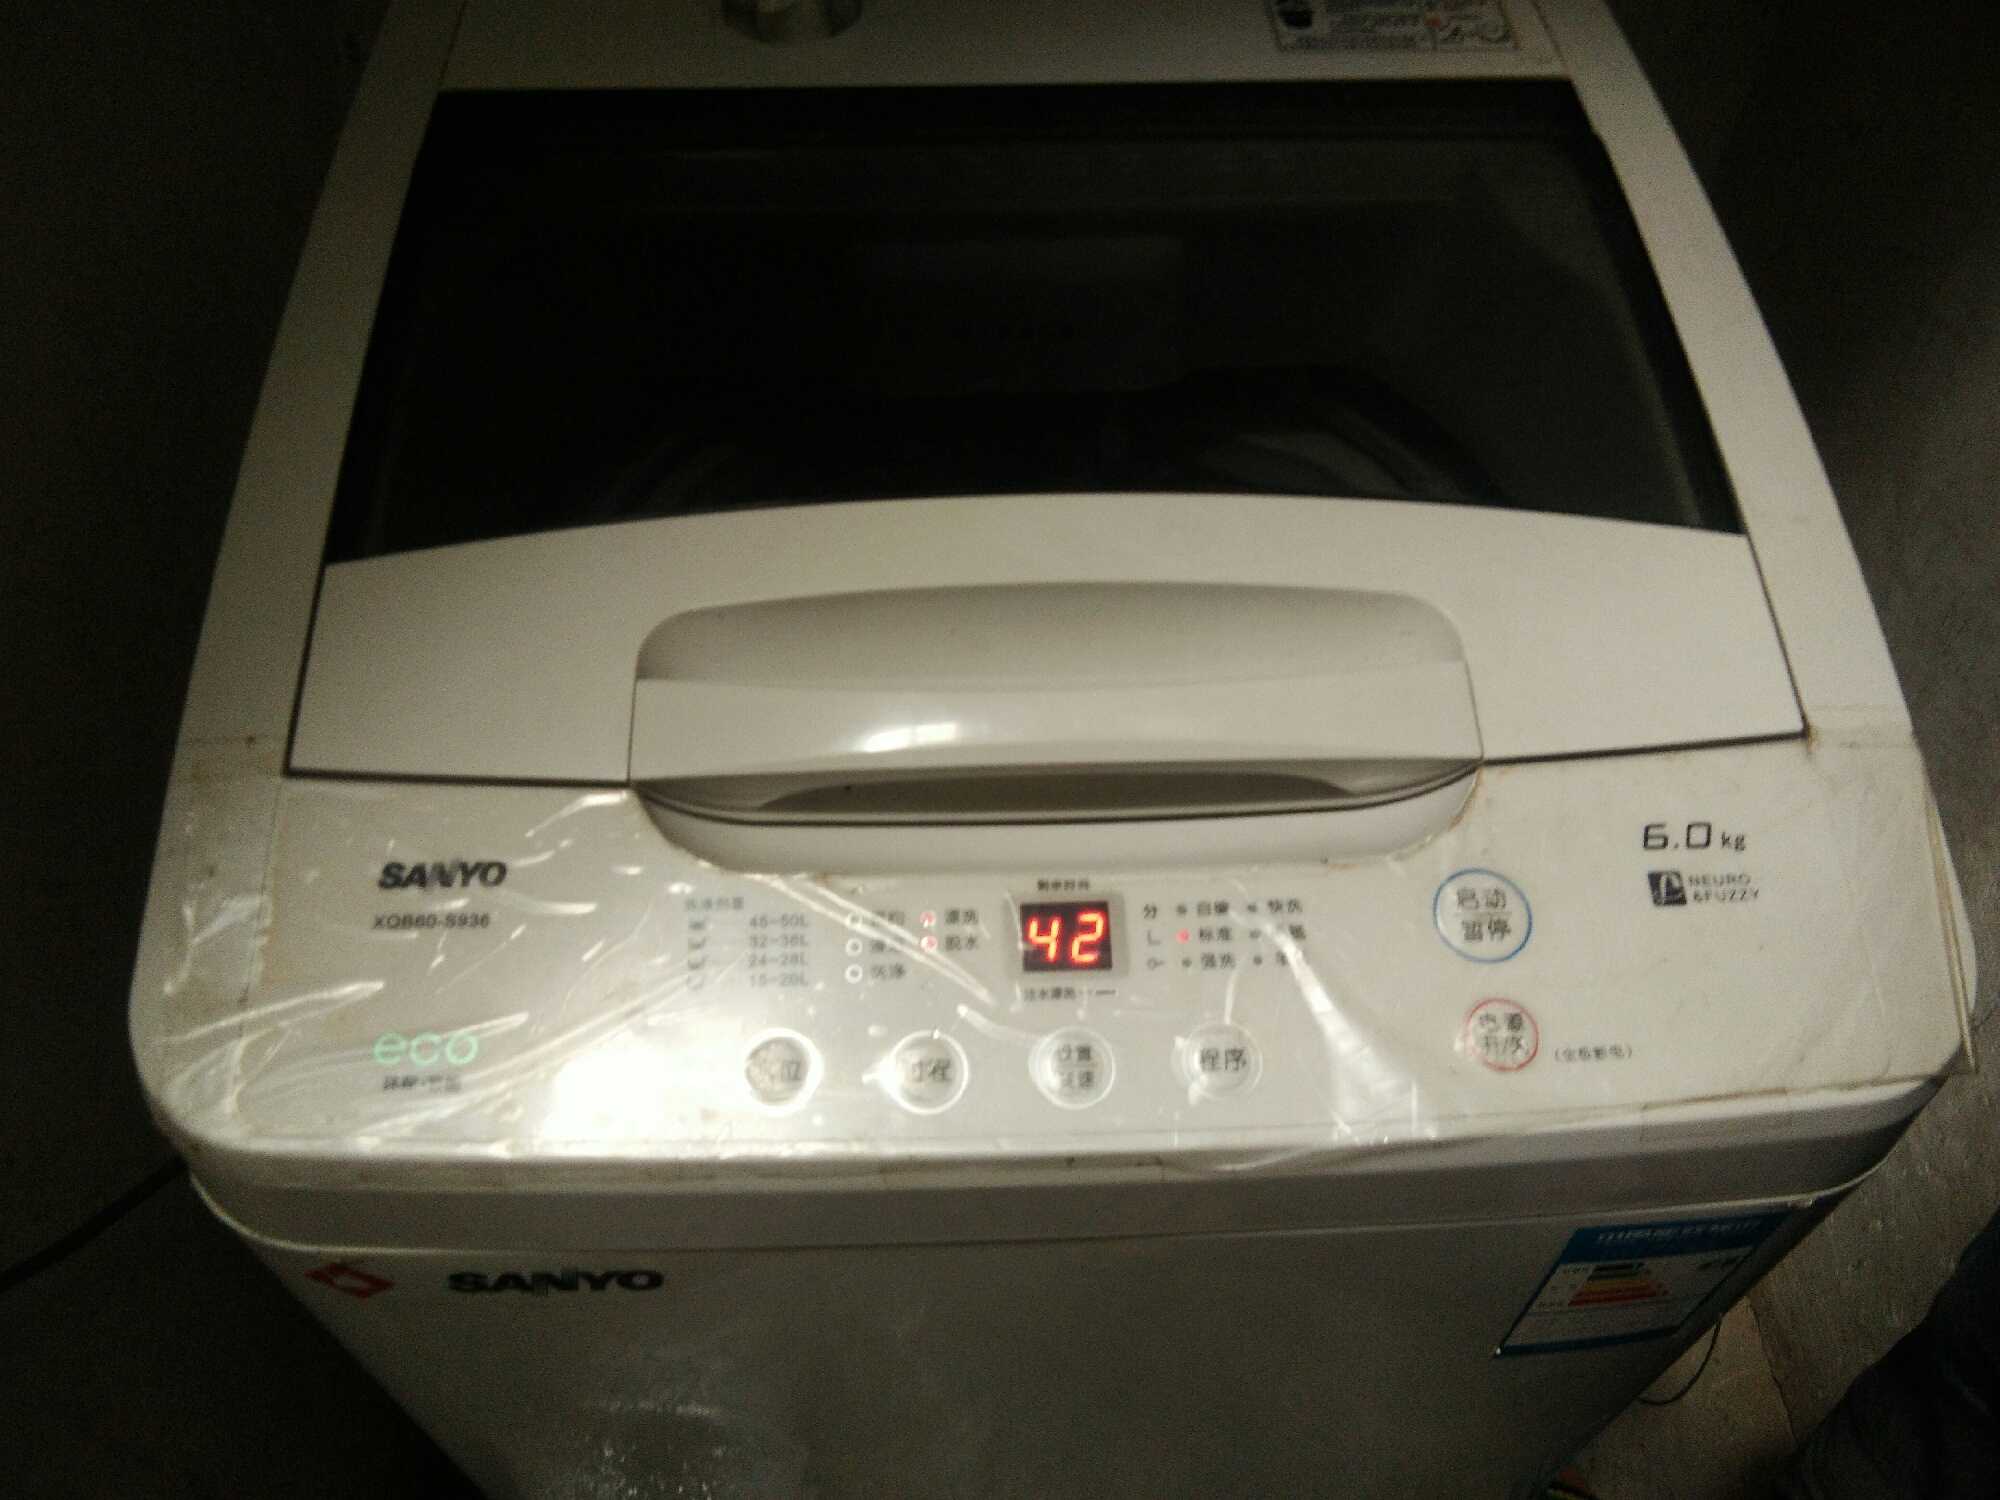 三洋洗衣机图片故障图片